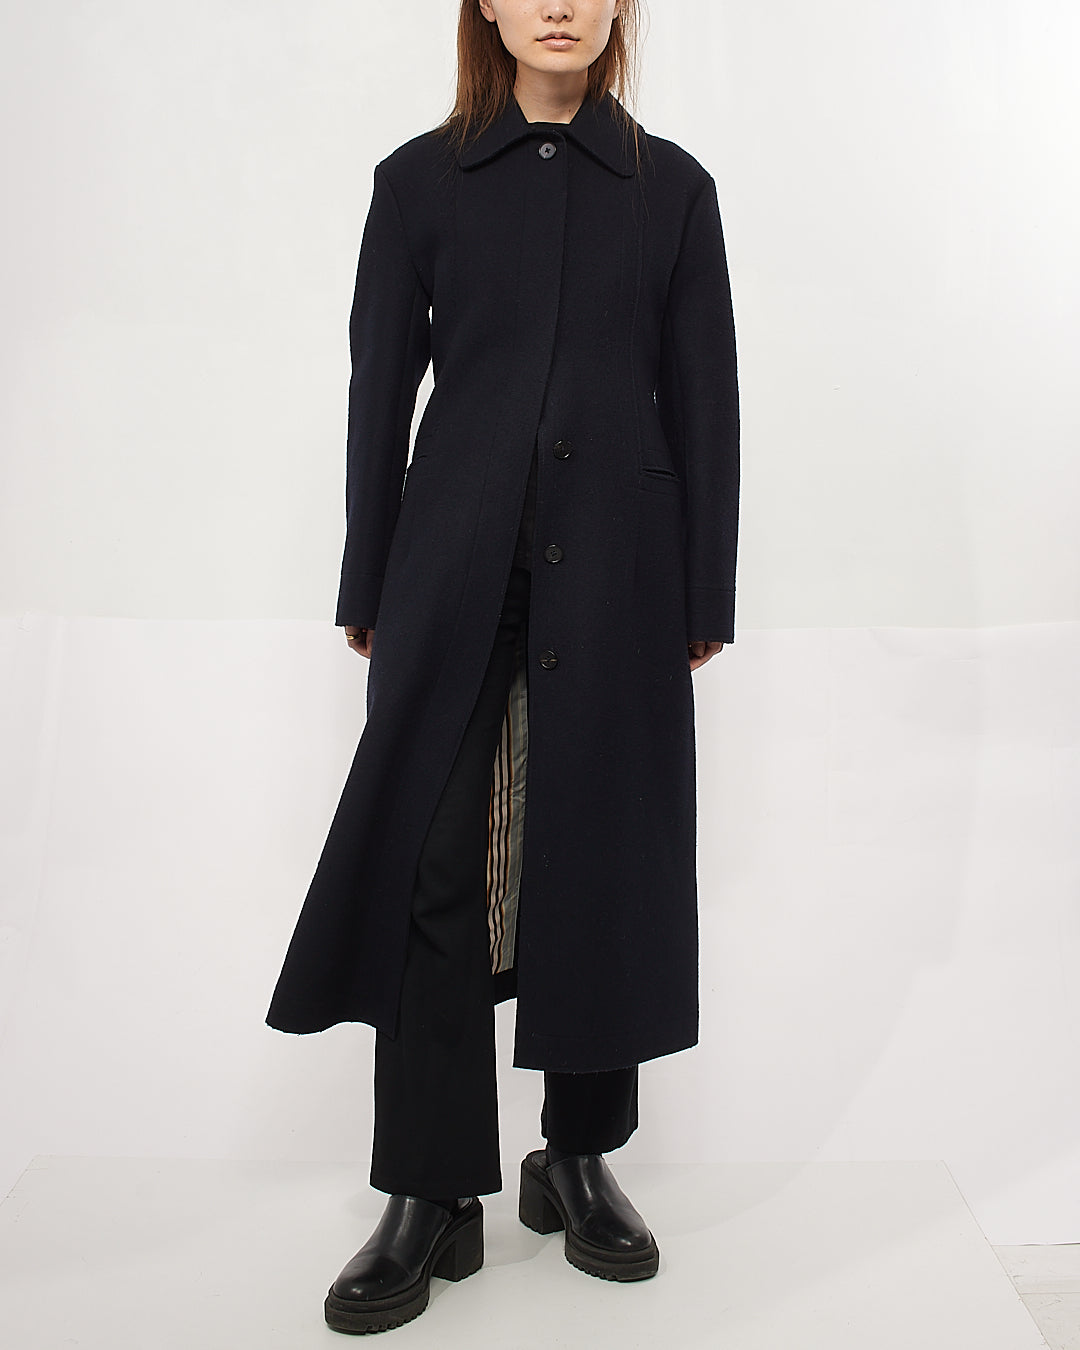 Jil Sander Black Wool Coat - 34